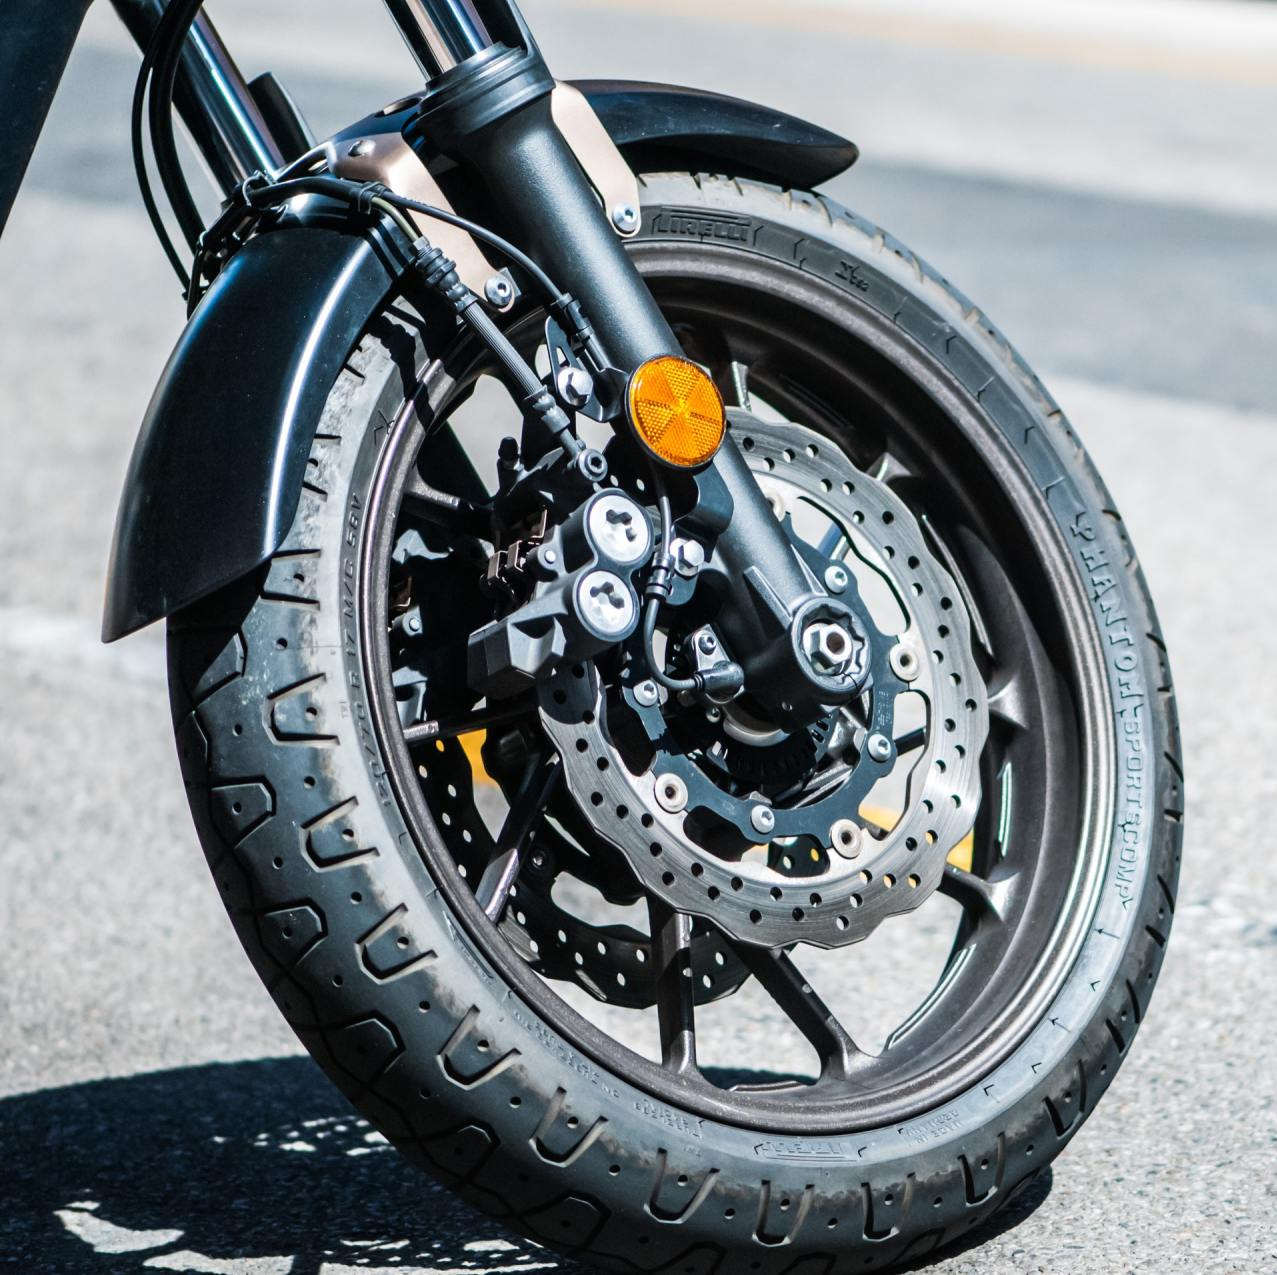 Roda de motocicleta sobre asfalto